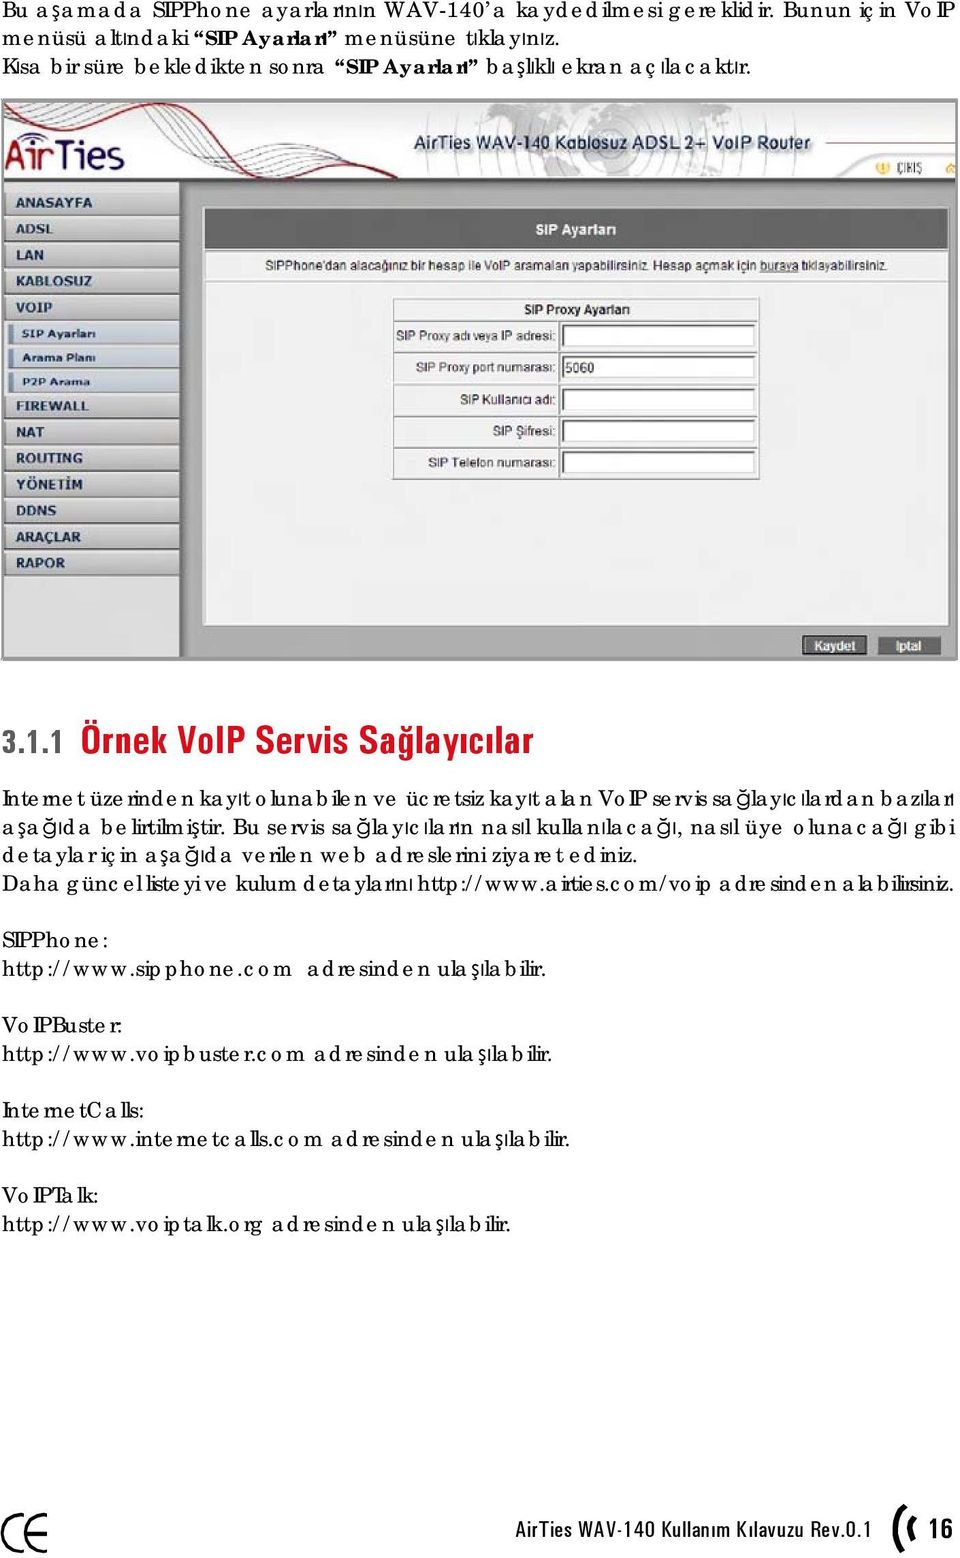 1 Örnek VoIP Servis Sağlayıcılar Internet üzerinden kayıt olunabilen ve ücretsiz kayıt alan VoIP servis sağlayıcılardan bazıları aşağıda belirtilmiştir.